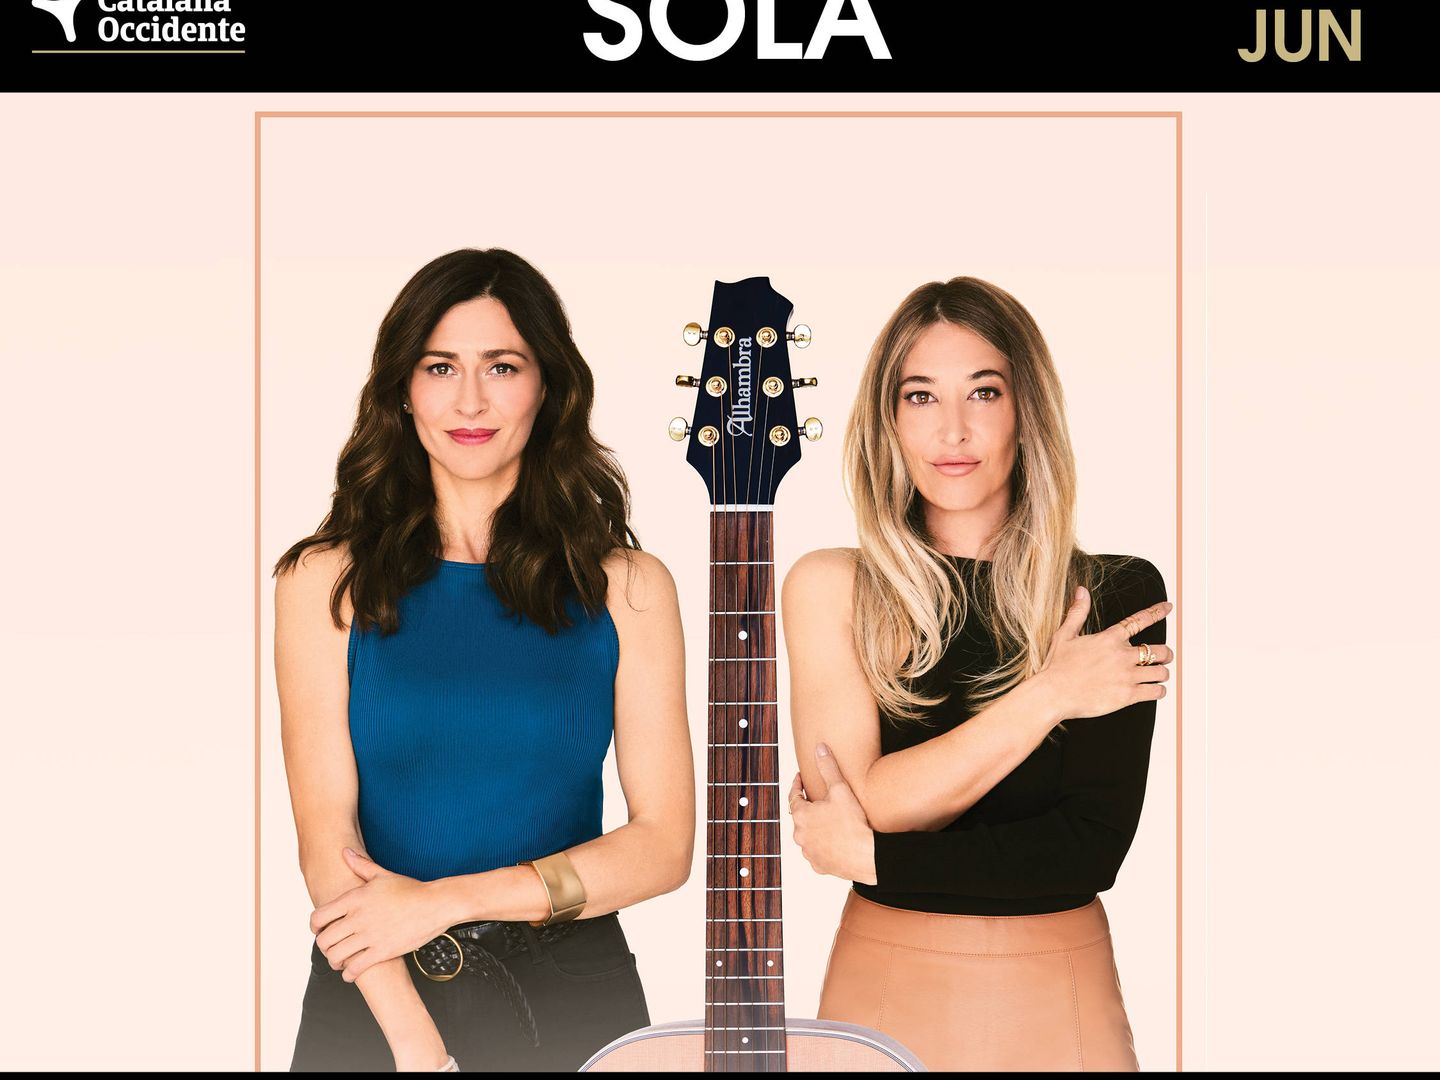 El cartel promocional del concierto de Ella Baila Sola en Starlite. (Cortesía)